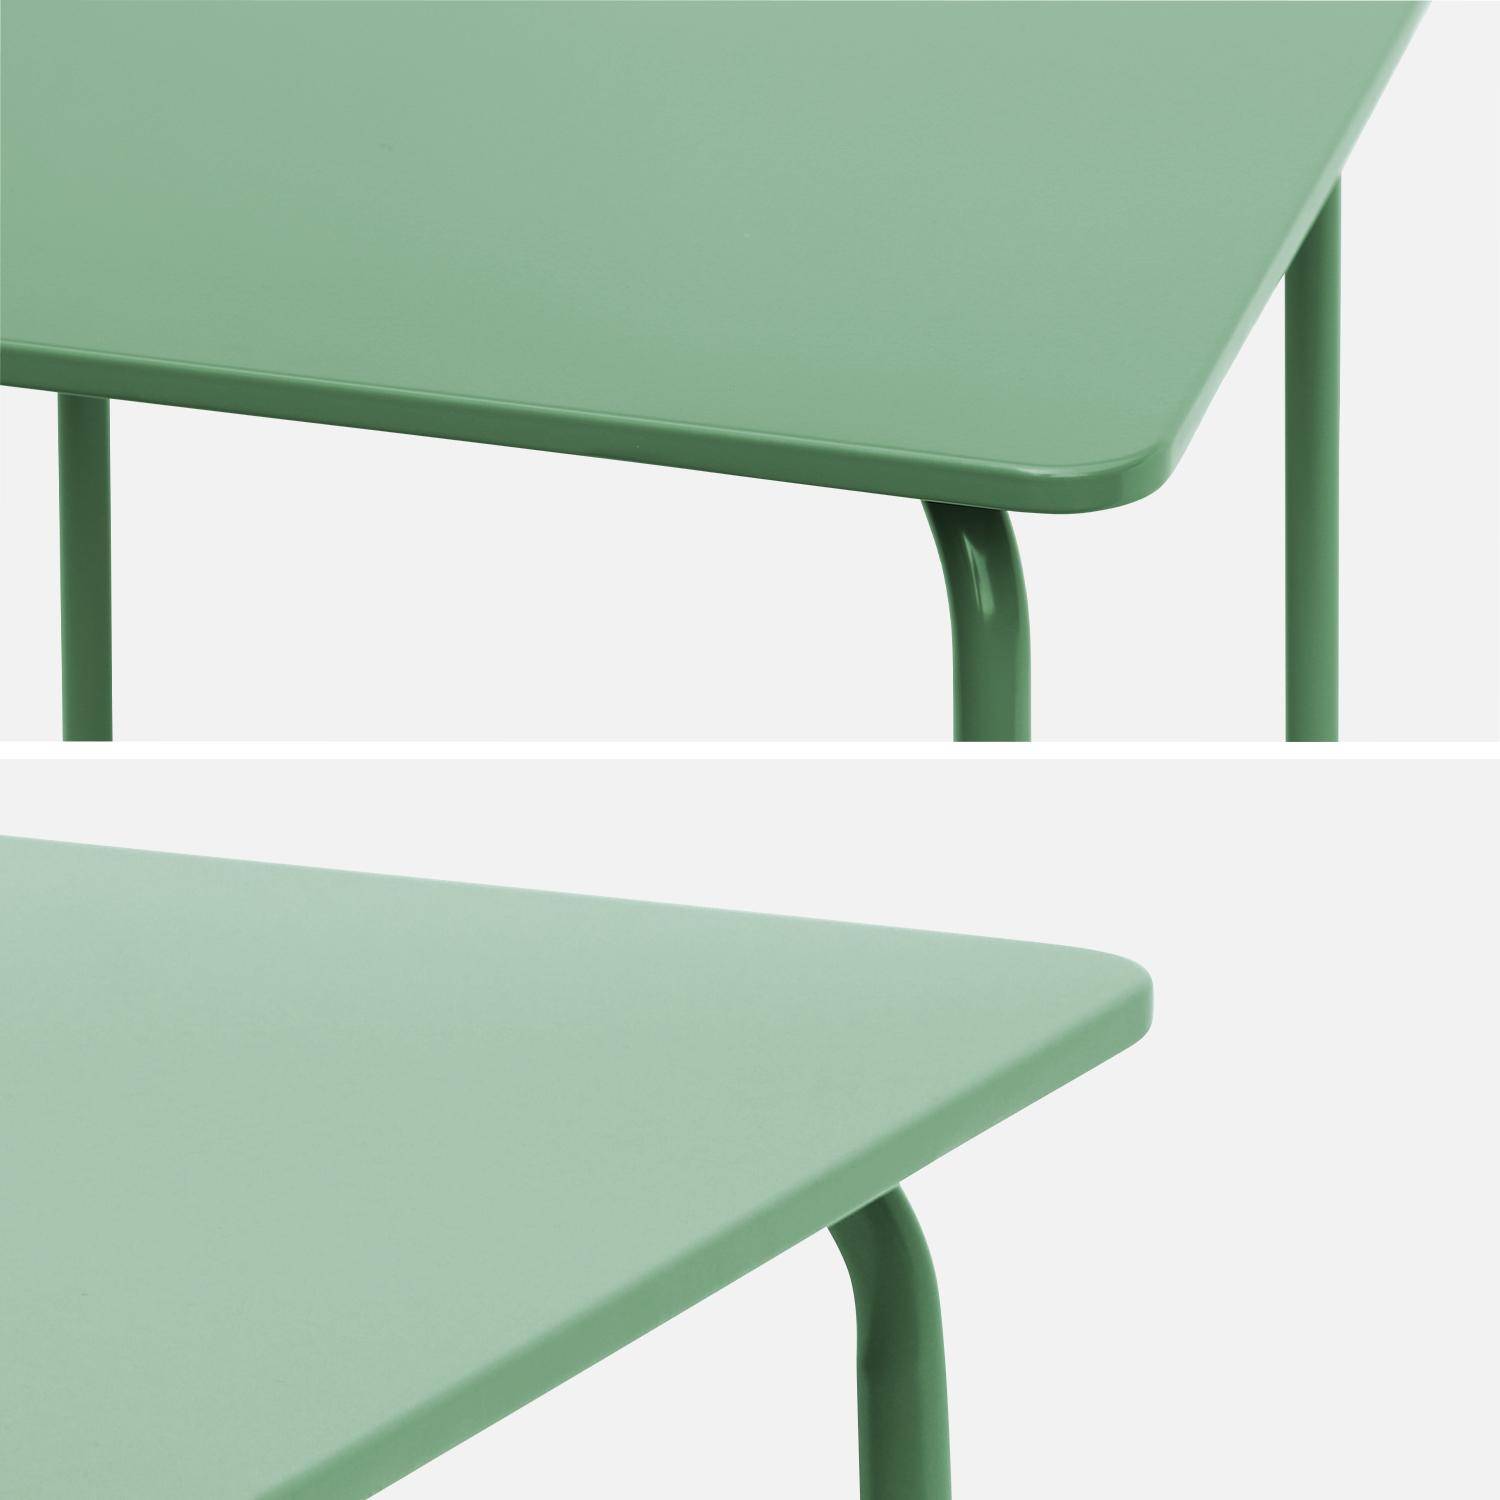 Tisch 48x48cm und 2 Stühle für Kinder, graugrün, 48x48cm, für draußen verwendbar - Anna,sweeek,Photo8